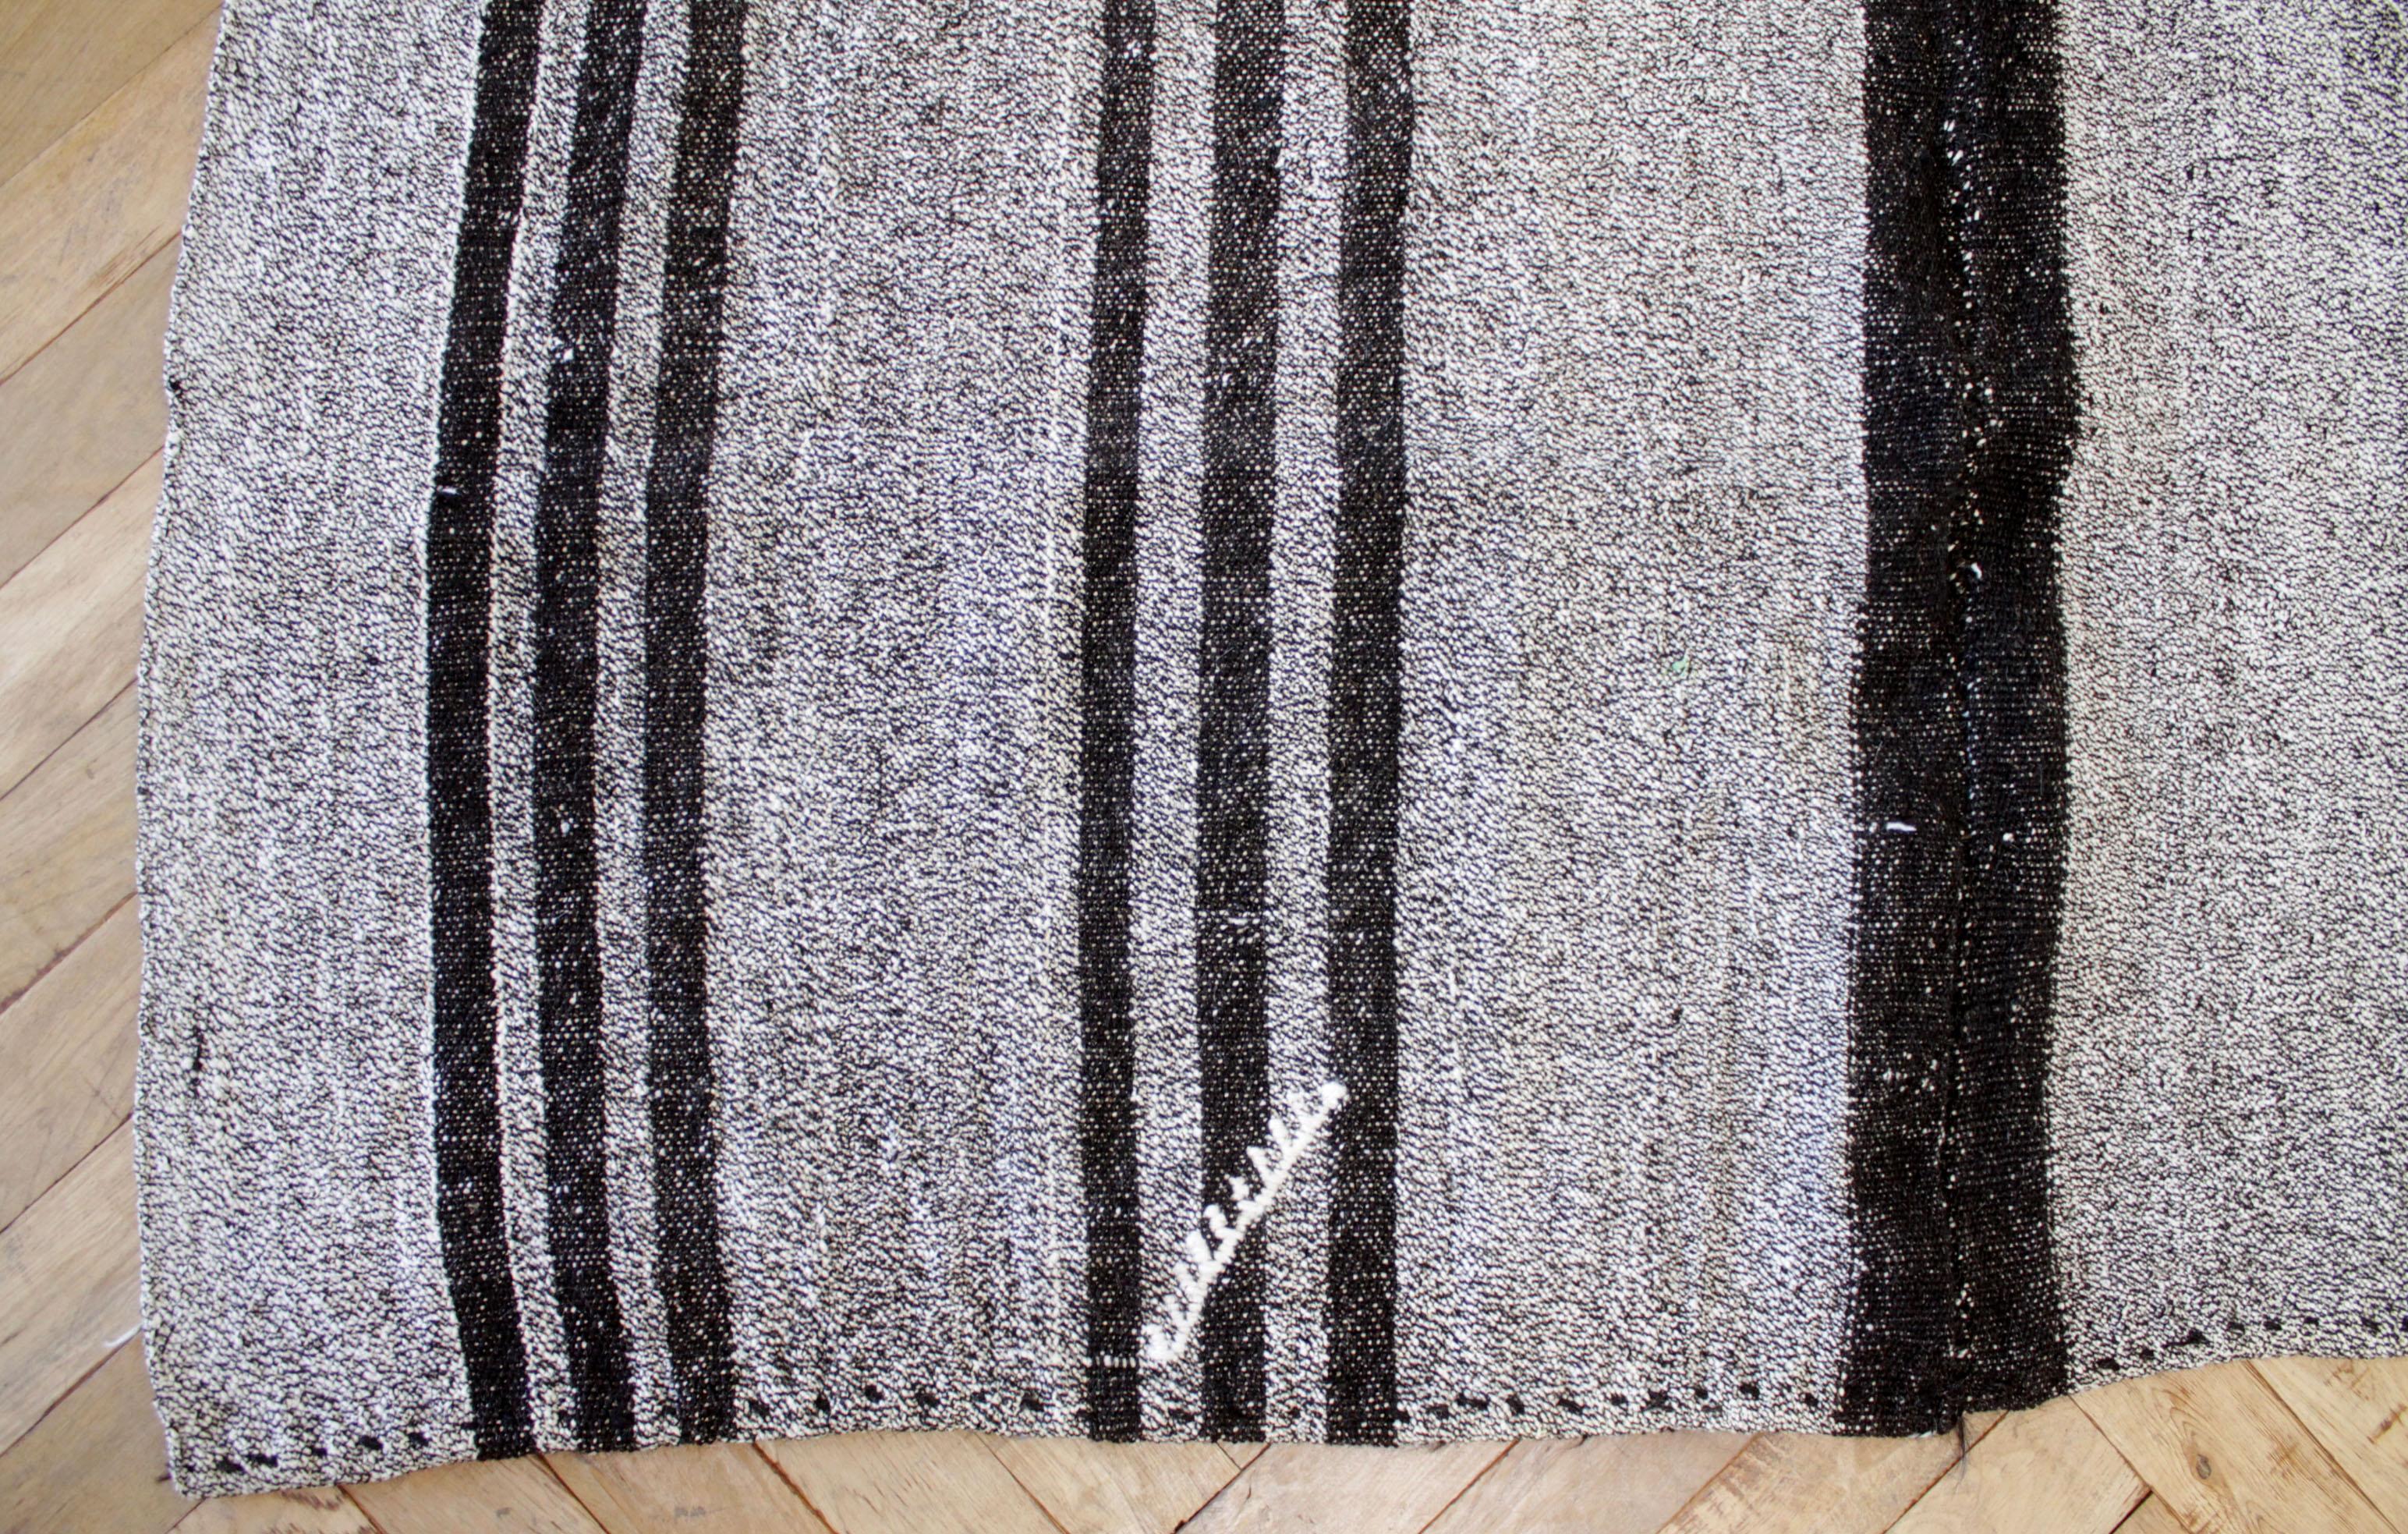 Teresa-Teppich
Türkischer Vintage-Teppich in braunen und grauen Streifen.
Unsere neueste Kollektion ist aus der Türkei eingetroffen. Sie eignet sich hervorragend als Teppich.
Flachgewebe, Wolle und Ziegenhaar machen sie extrem haltbar und eignen